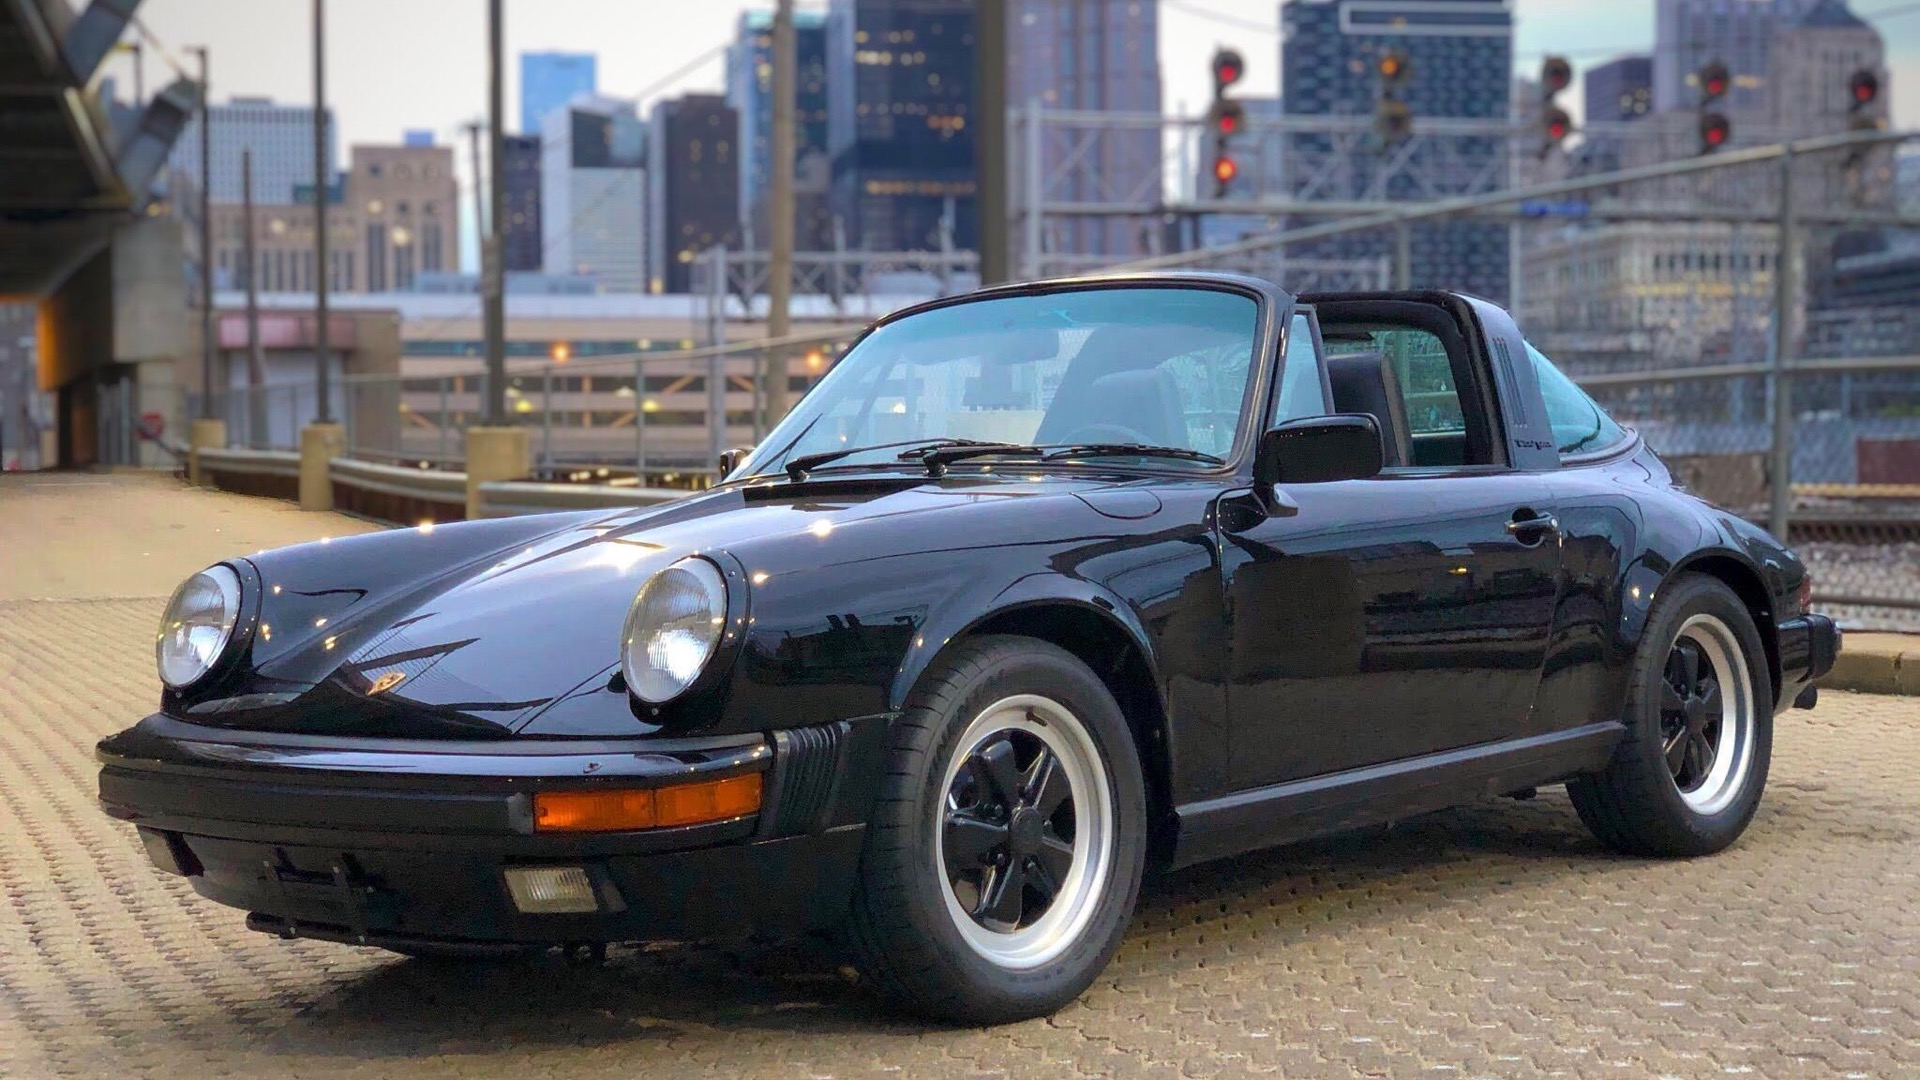 Tom Cruise's old 1986 Porsche 911 Targa sells for $86,000